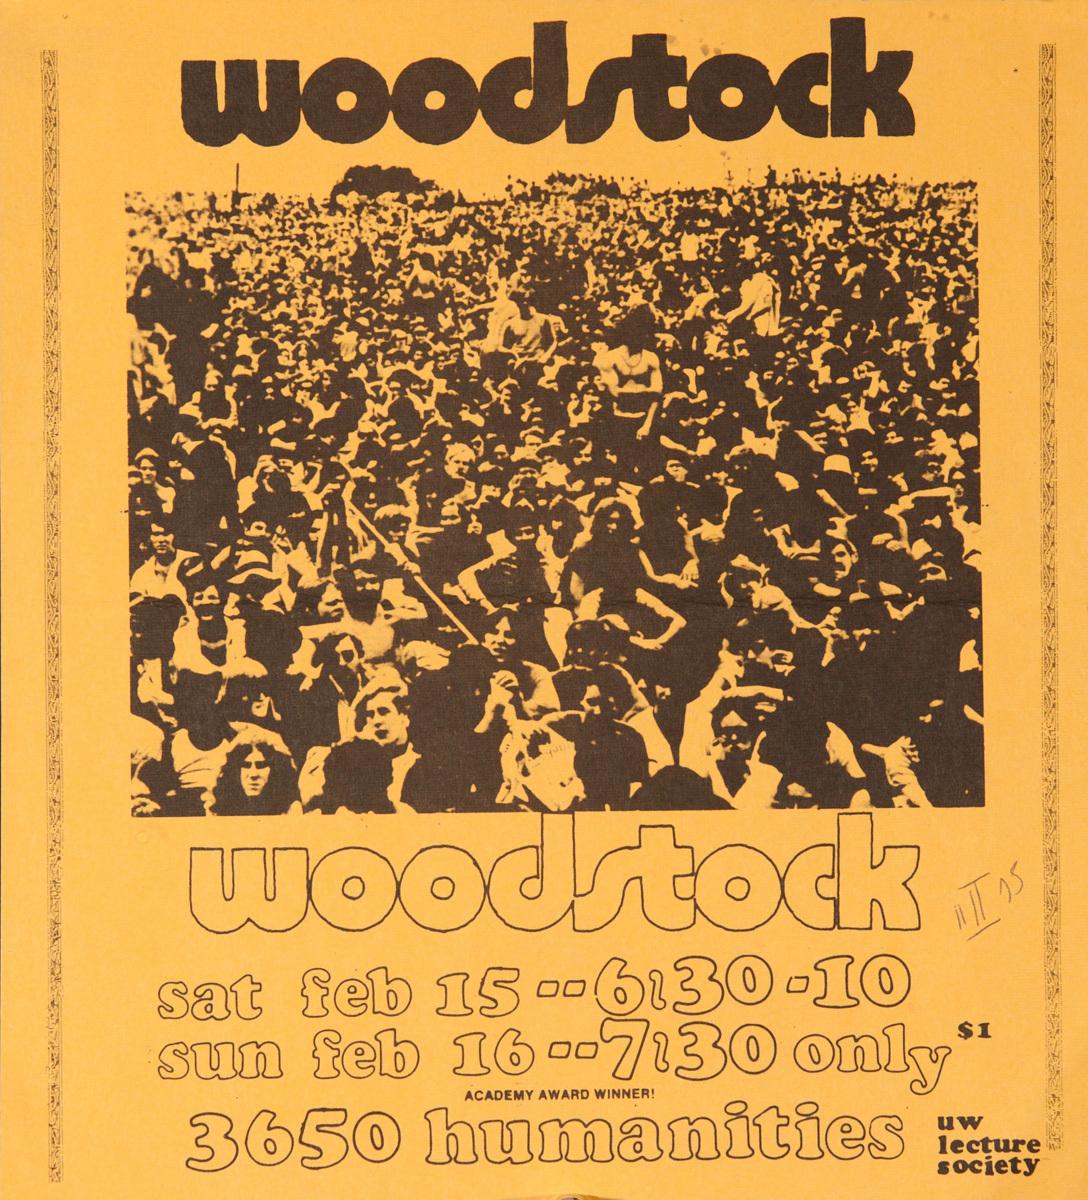 Woodstock, Original College Campus Movie Poster